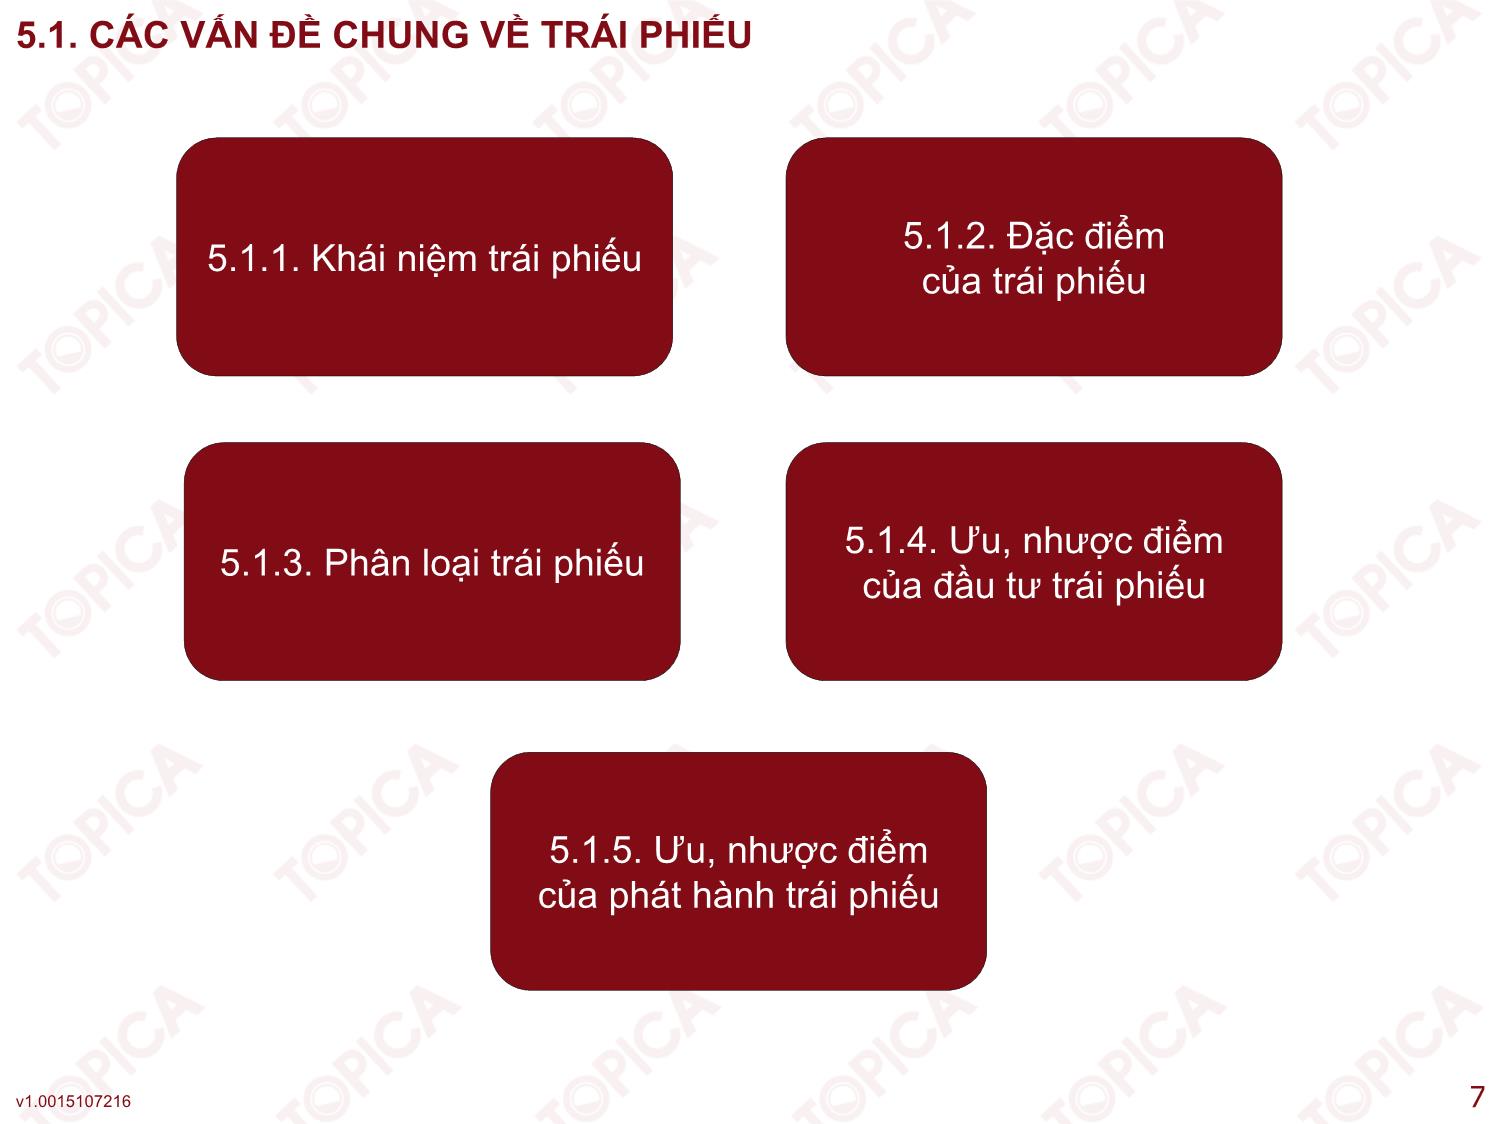 Bài giảng Kế toán công ty - Bài 5: Kế toán phát hành và thanh toán trái phiếu - Nguyễn Minh Phương trang 7